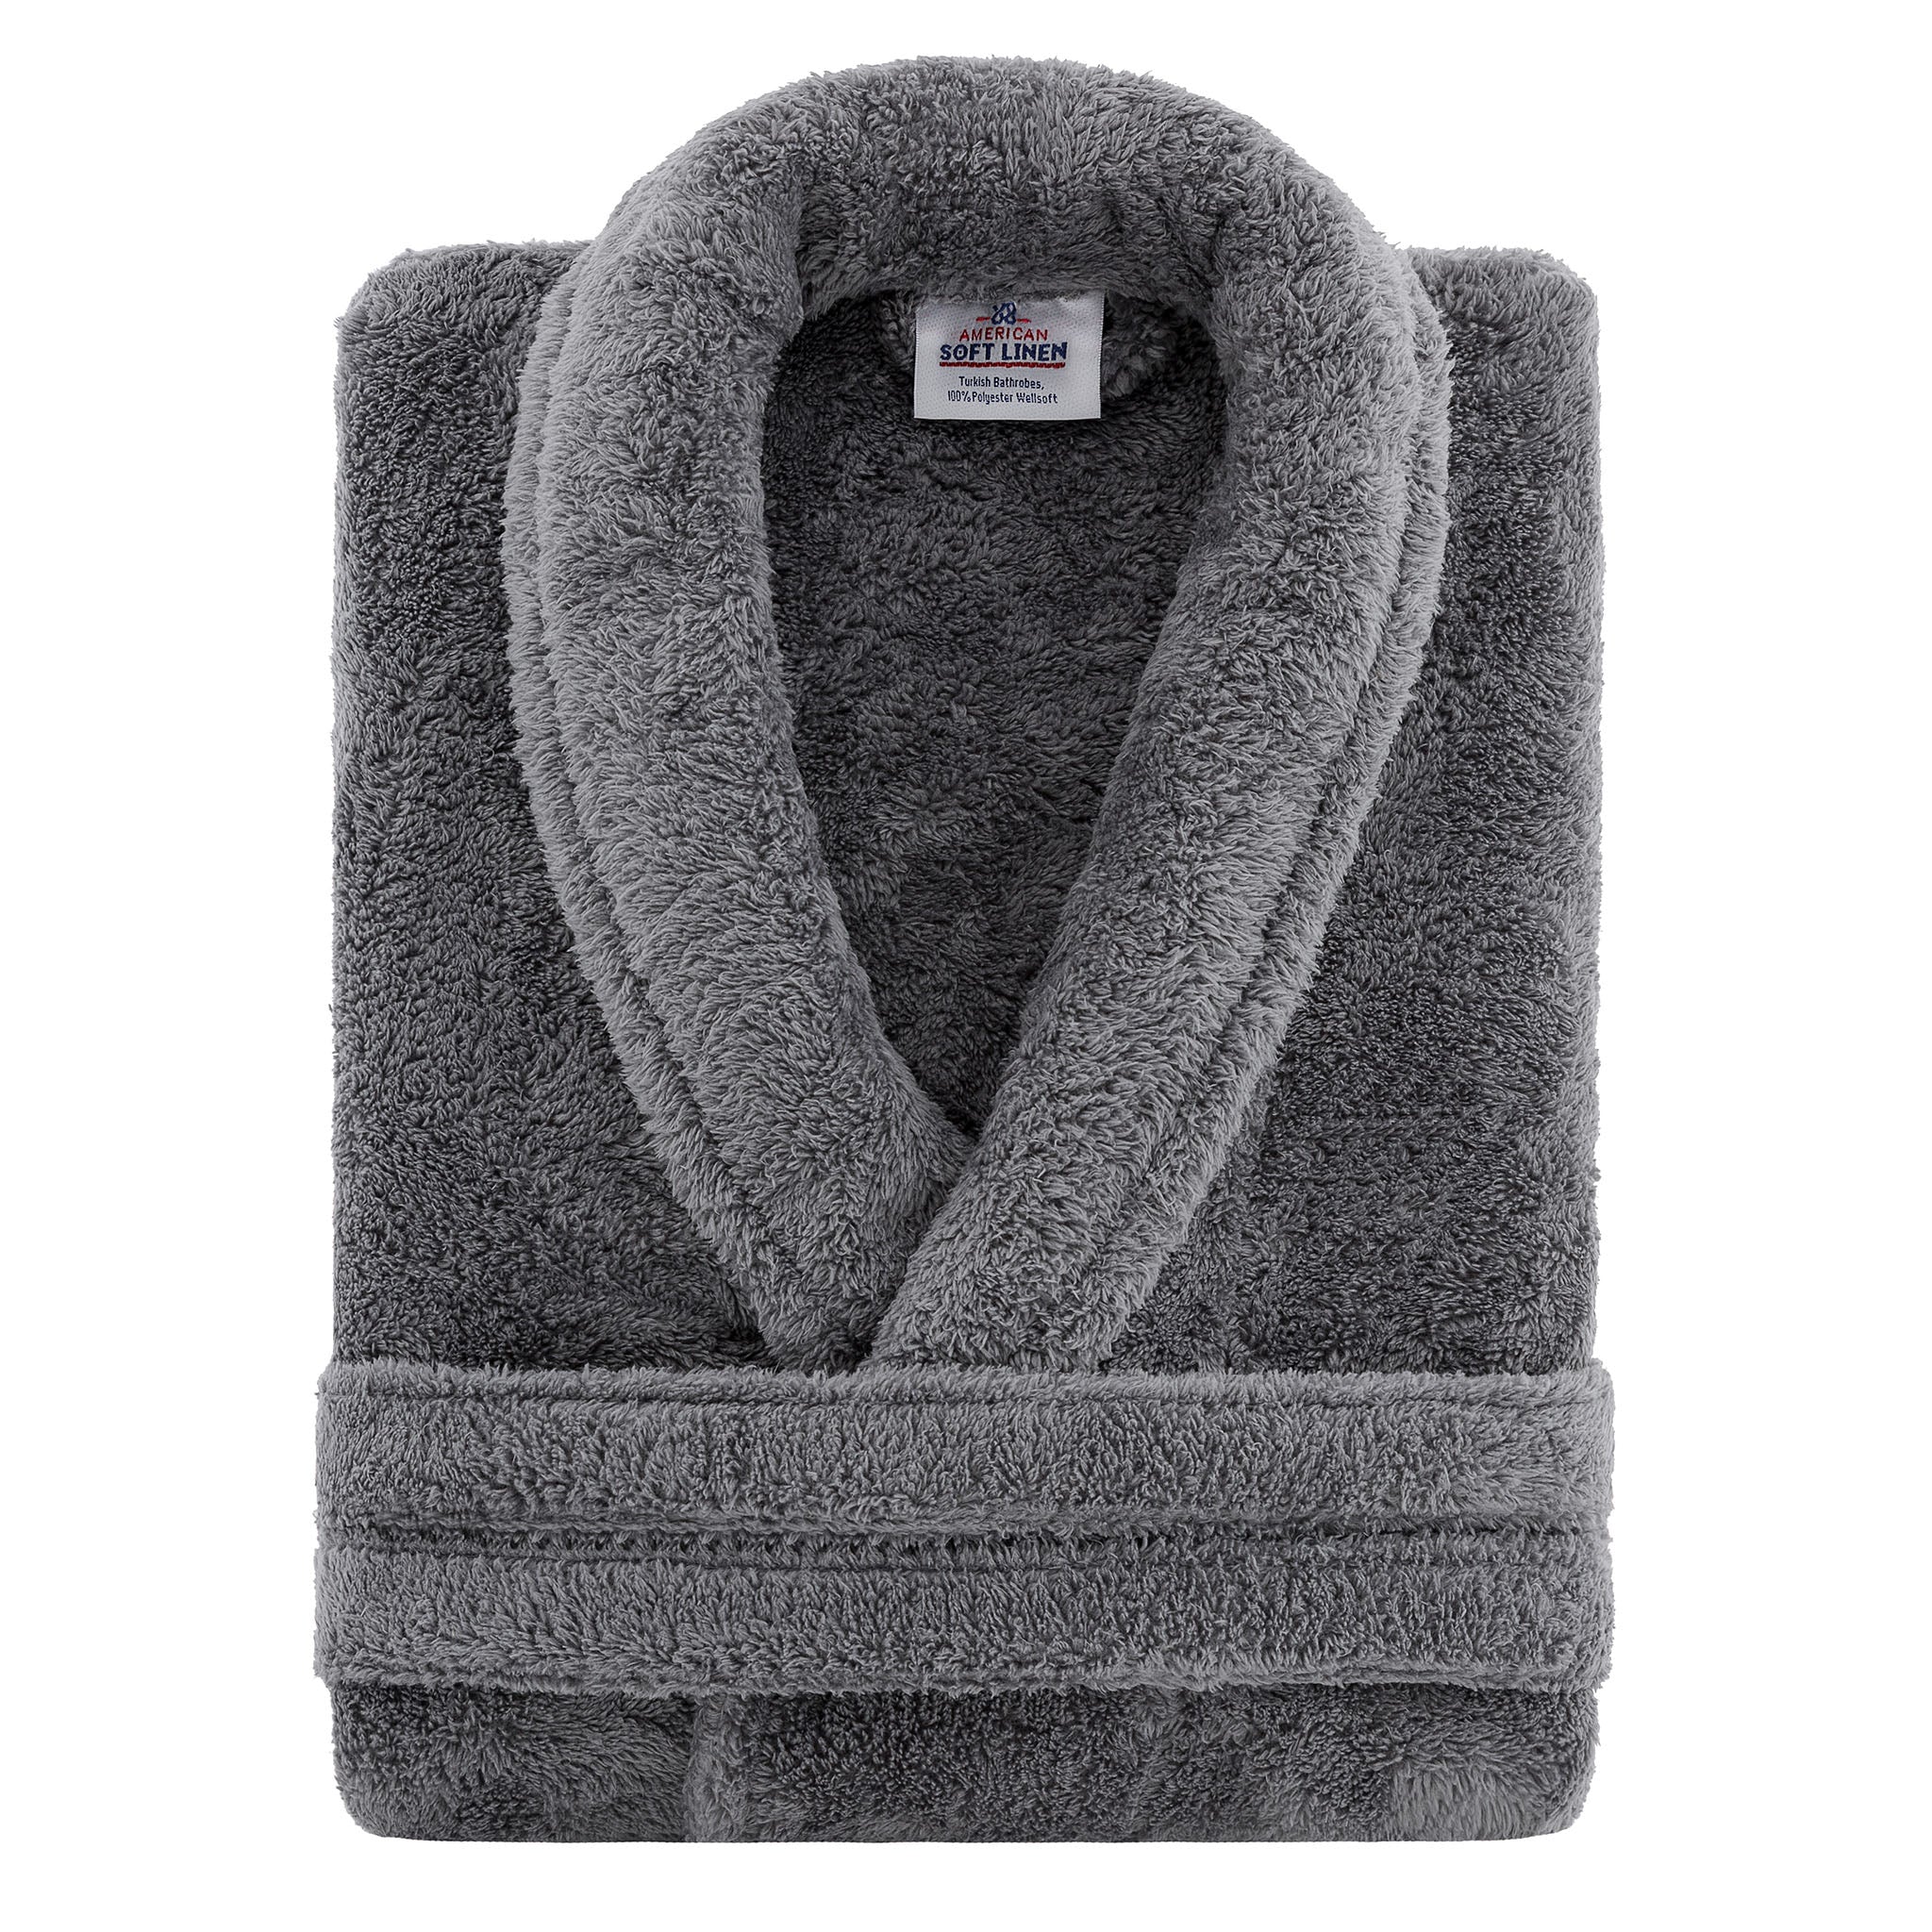 American Soft Linen Super Soft, Absorbent and Fluffy, Unisex Fleece Bathrobe L-XL-gray-3